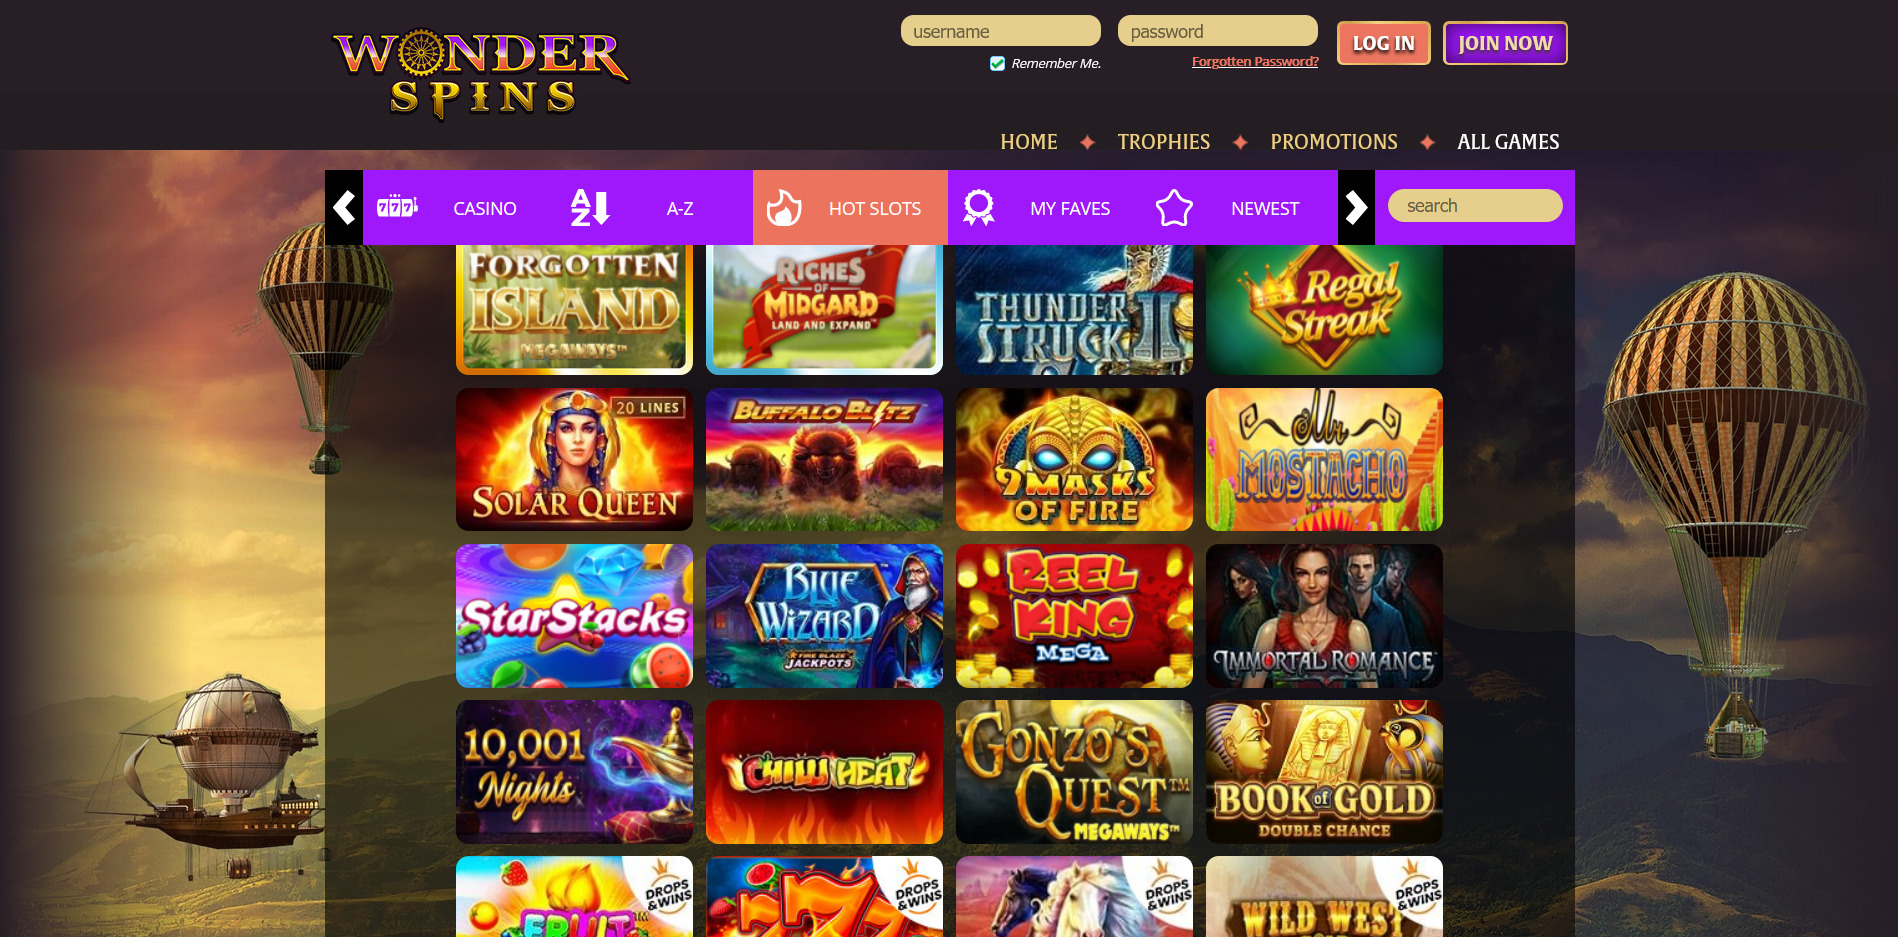 Wonder Spins Casino Games